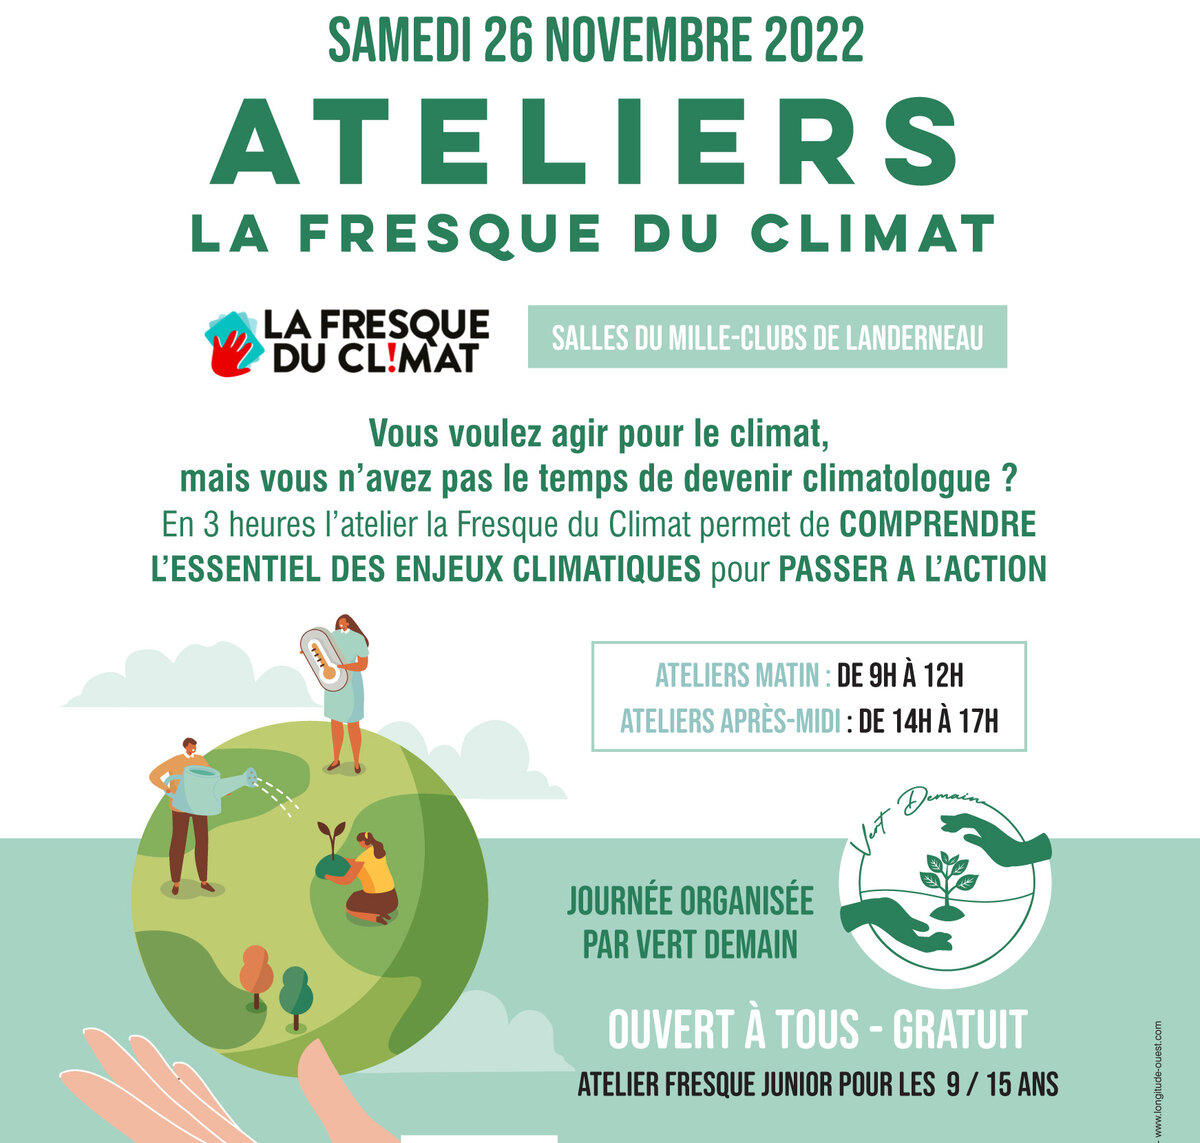 Ateliers "La Fresque du Climat" à Landerneau le 26 novembre